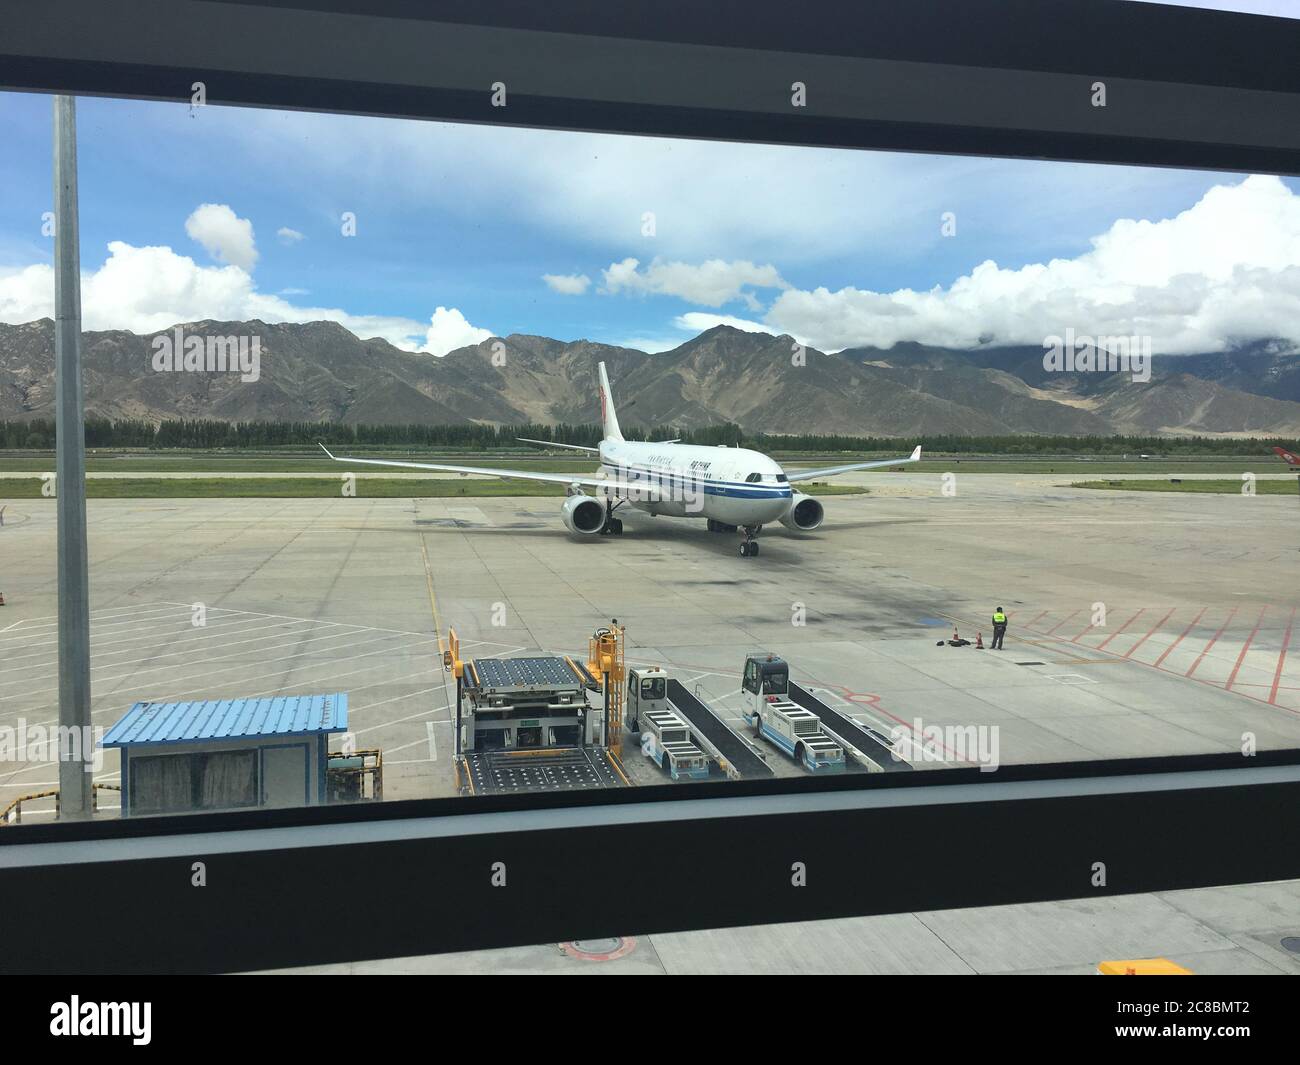 Lhasa, Tibet / China - 29. Jul 2017: Blick auf Air China Flugzeug am Flughafen Lhasa-Gongar. Der Flughafen liegt rund 45 Kilometer südlich der tibetischen Kapit Stockfoto